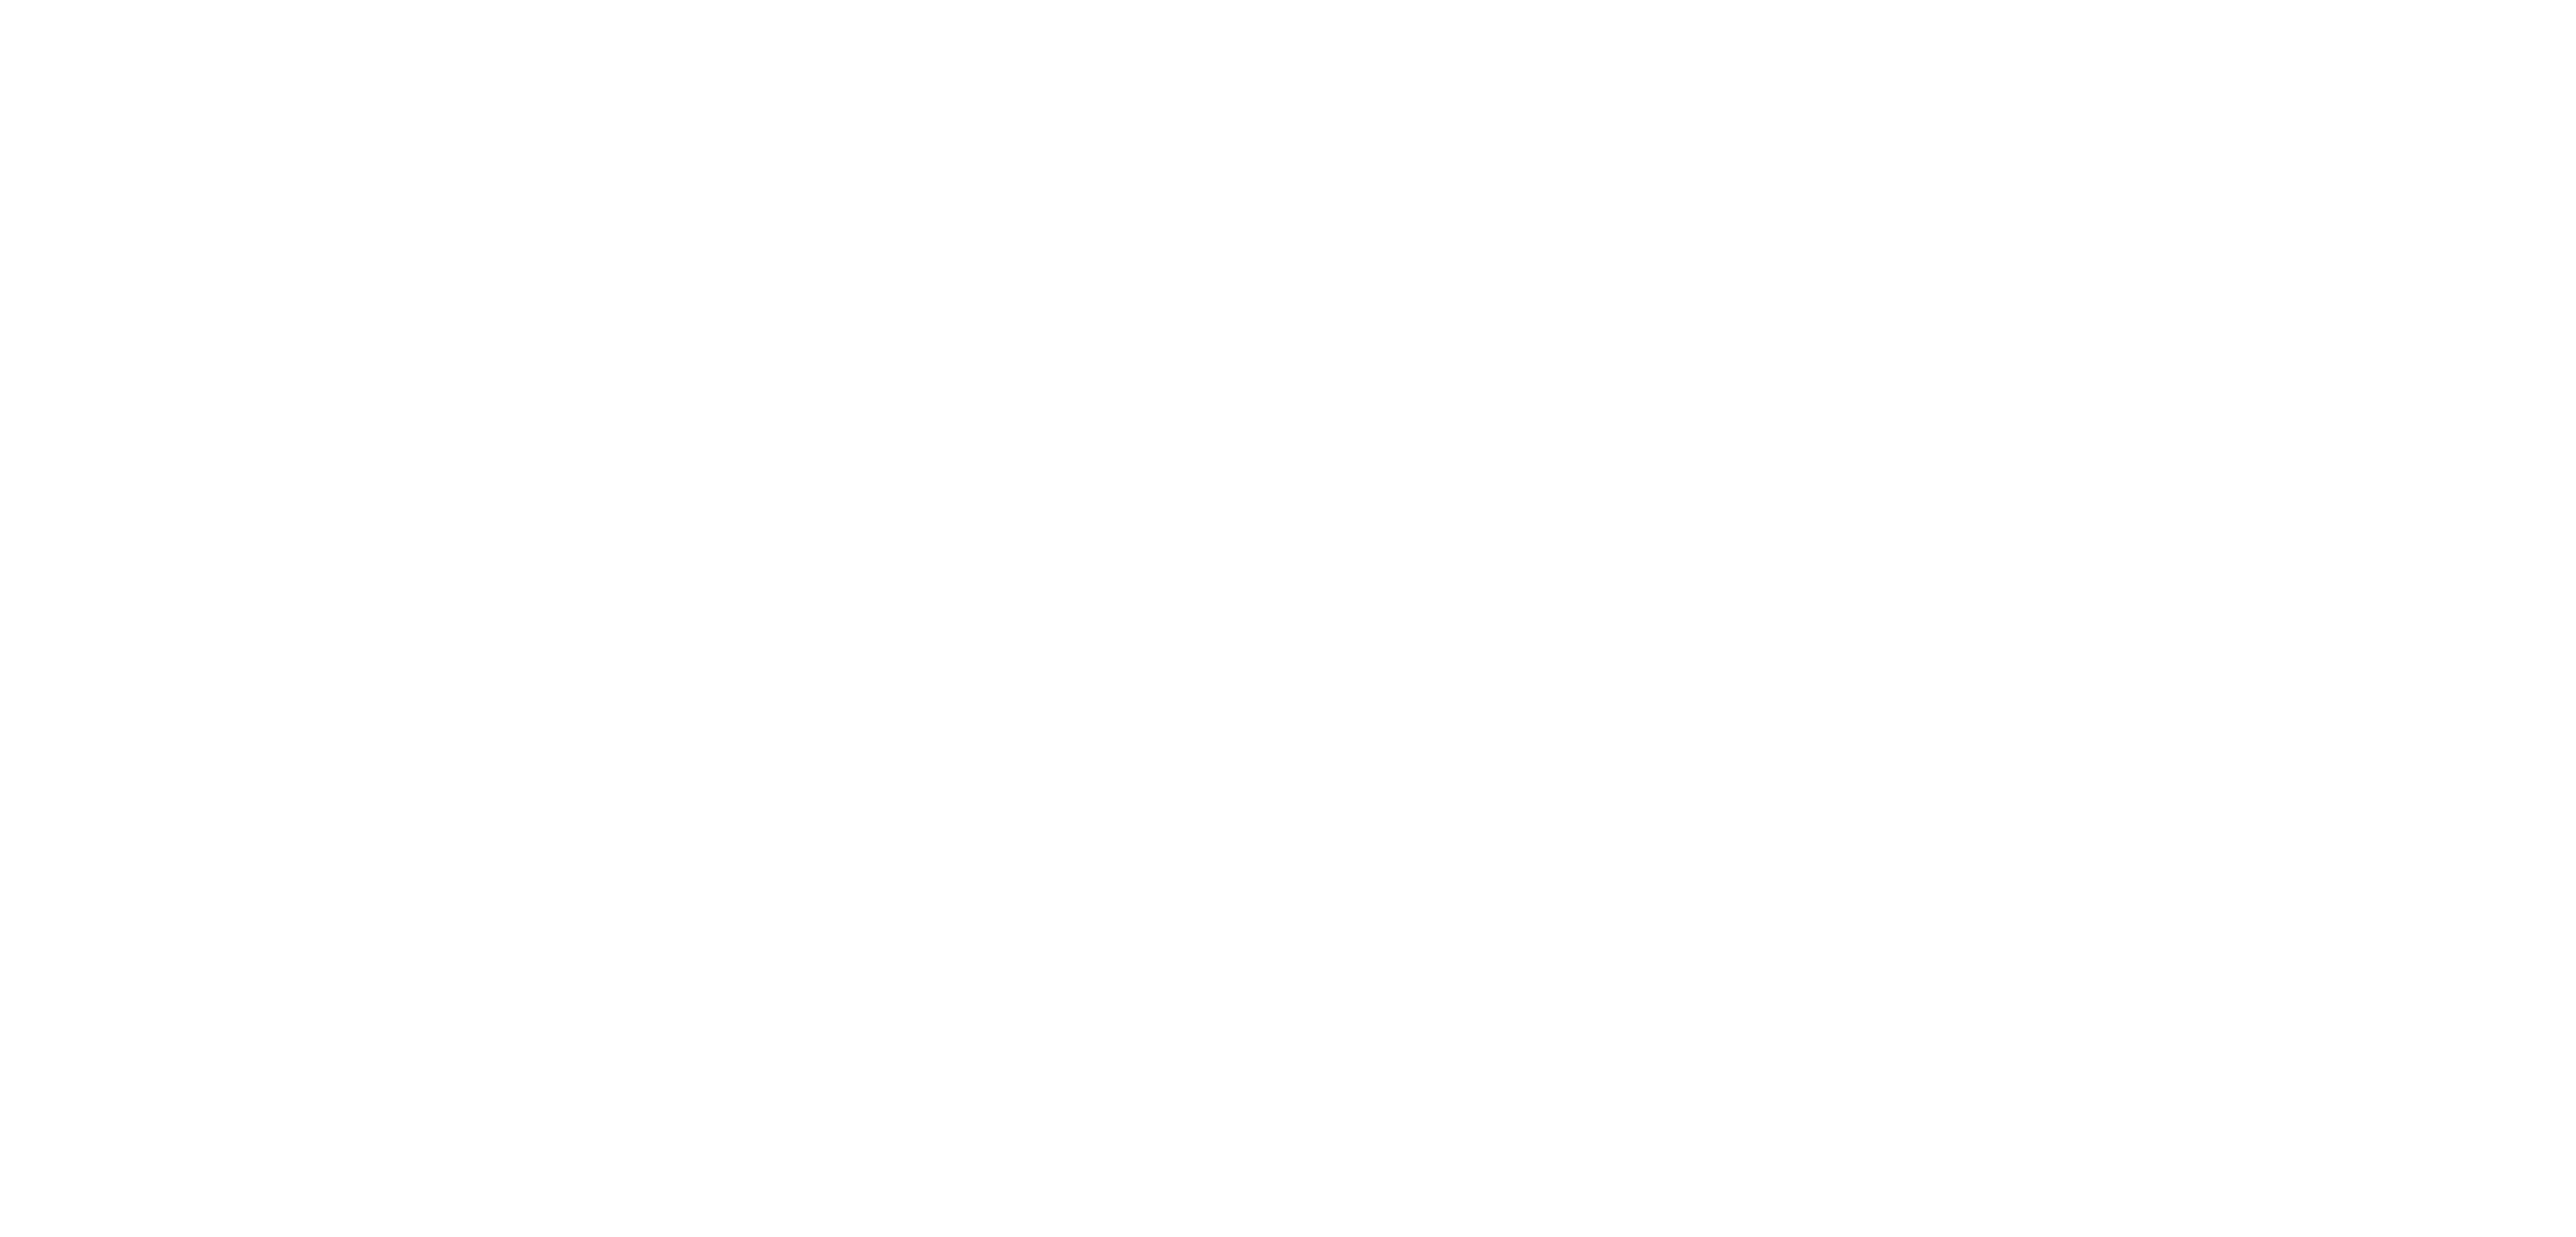 Union Deals